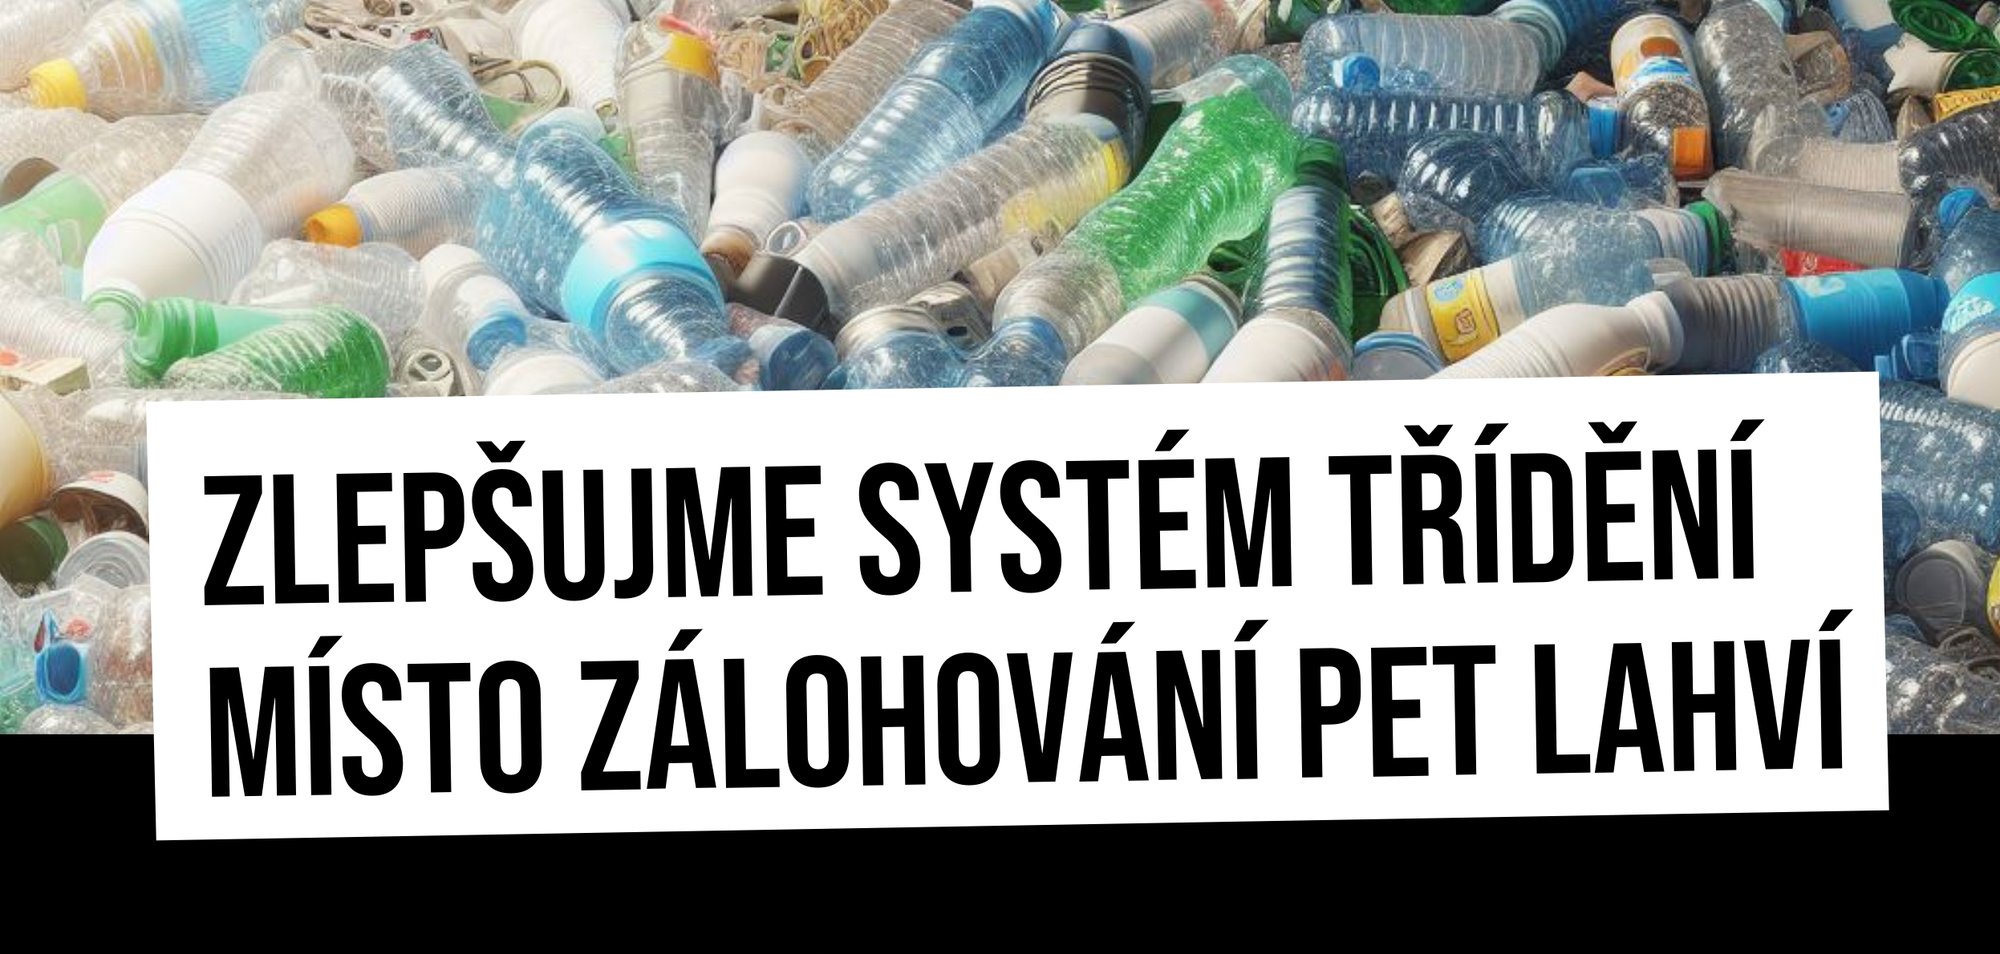 Zálohování PET lahví naruší systém třídění odpadů a připraví obce o peníze